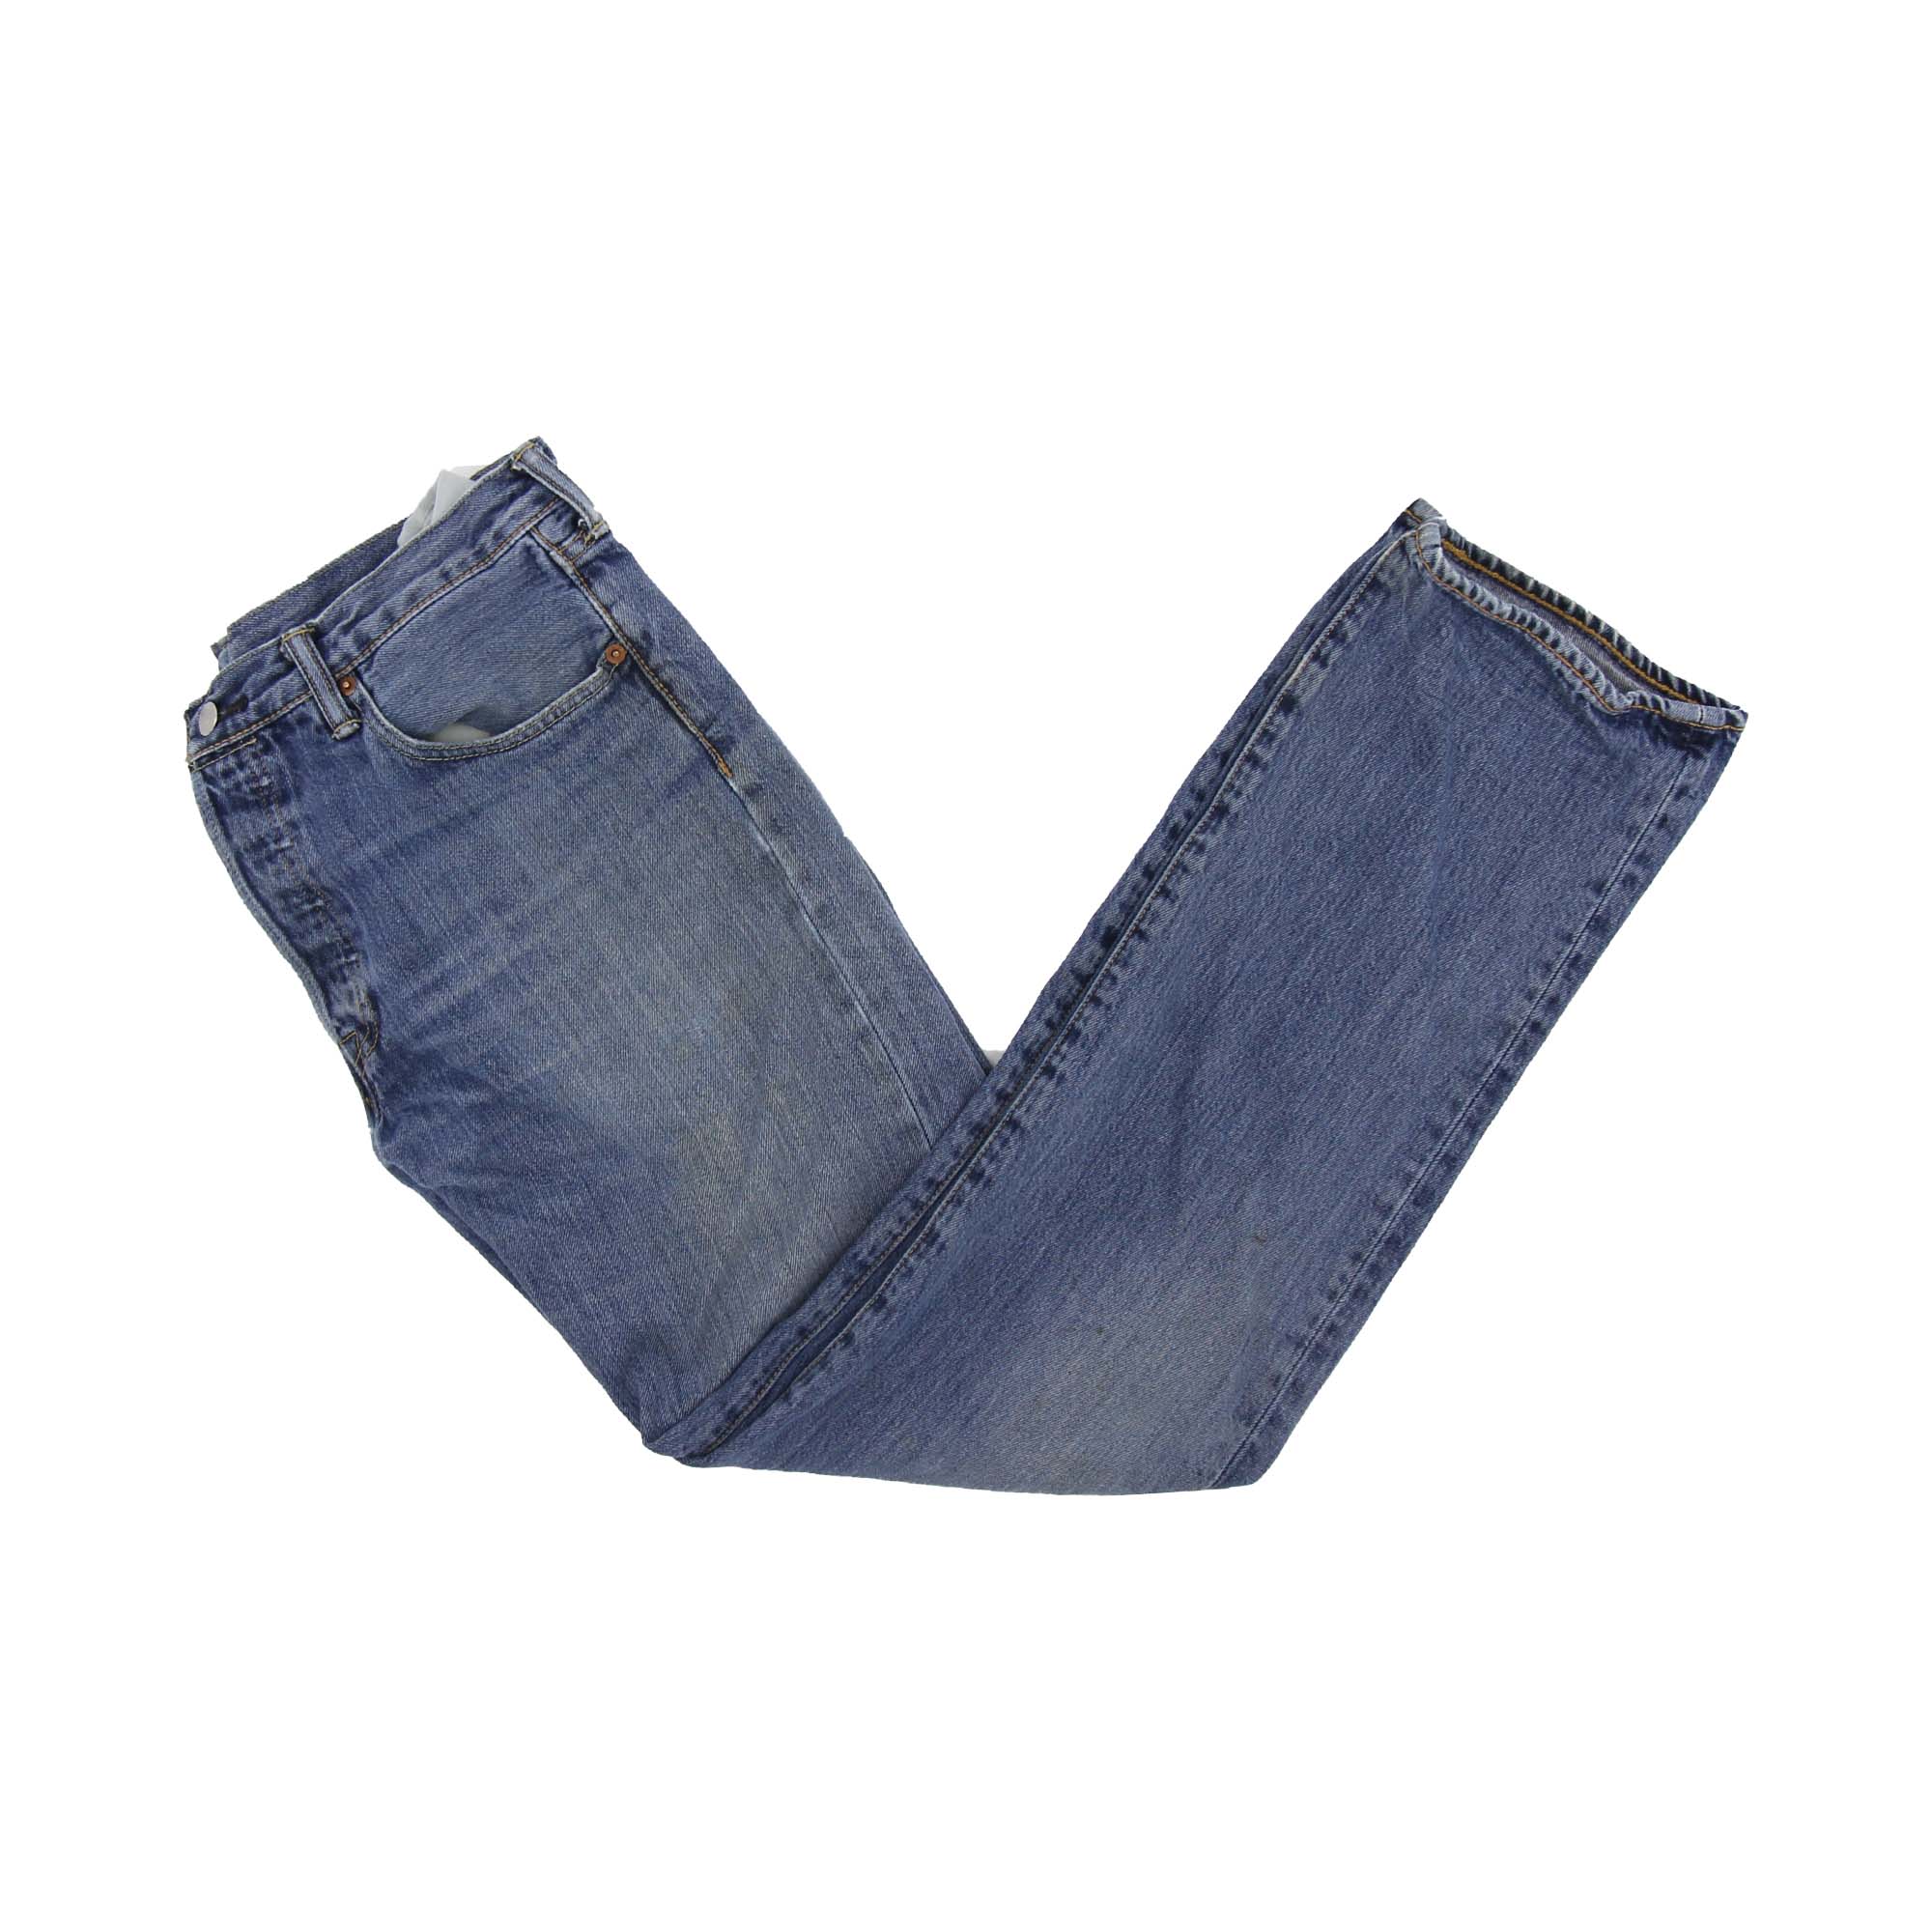 Levi's 501 Denim Jeans - W33 L34